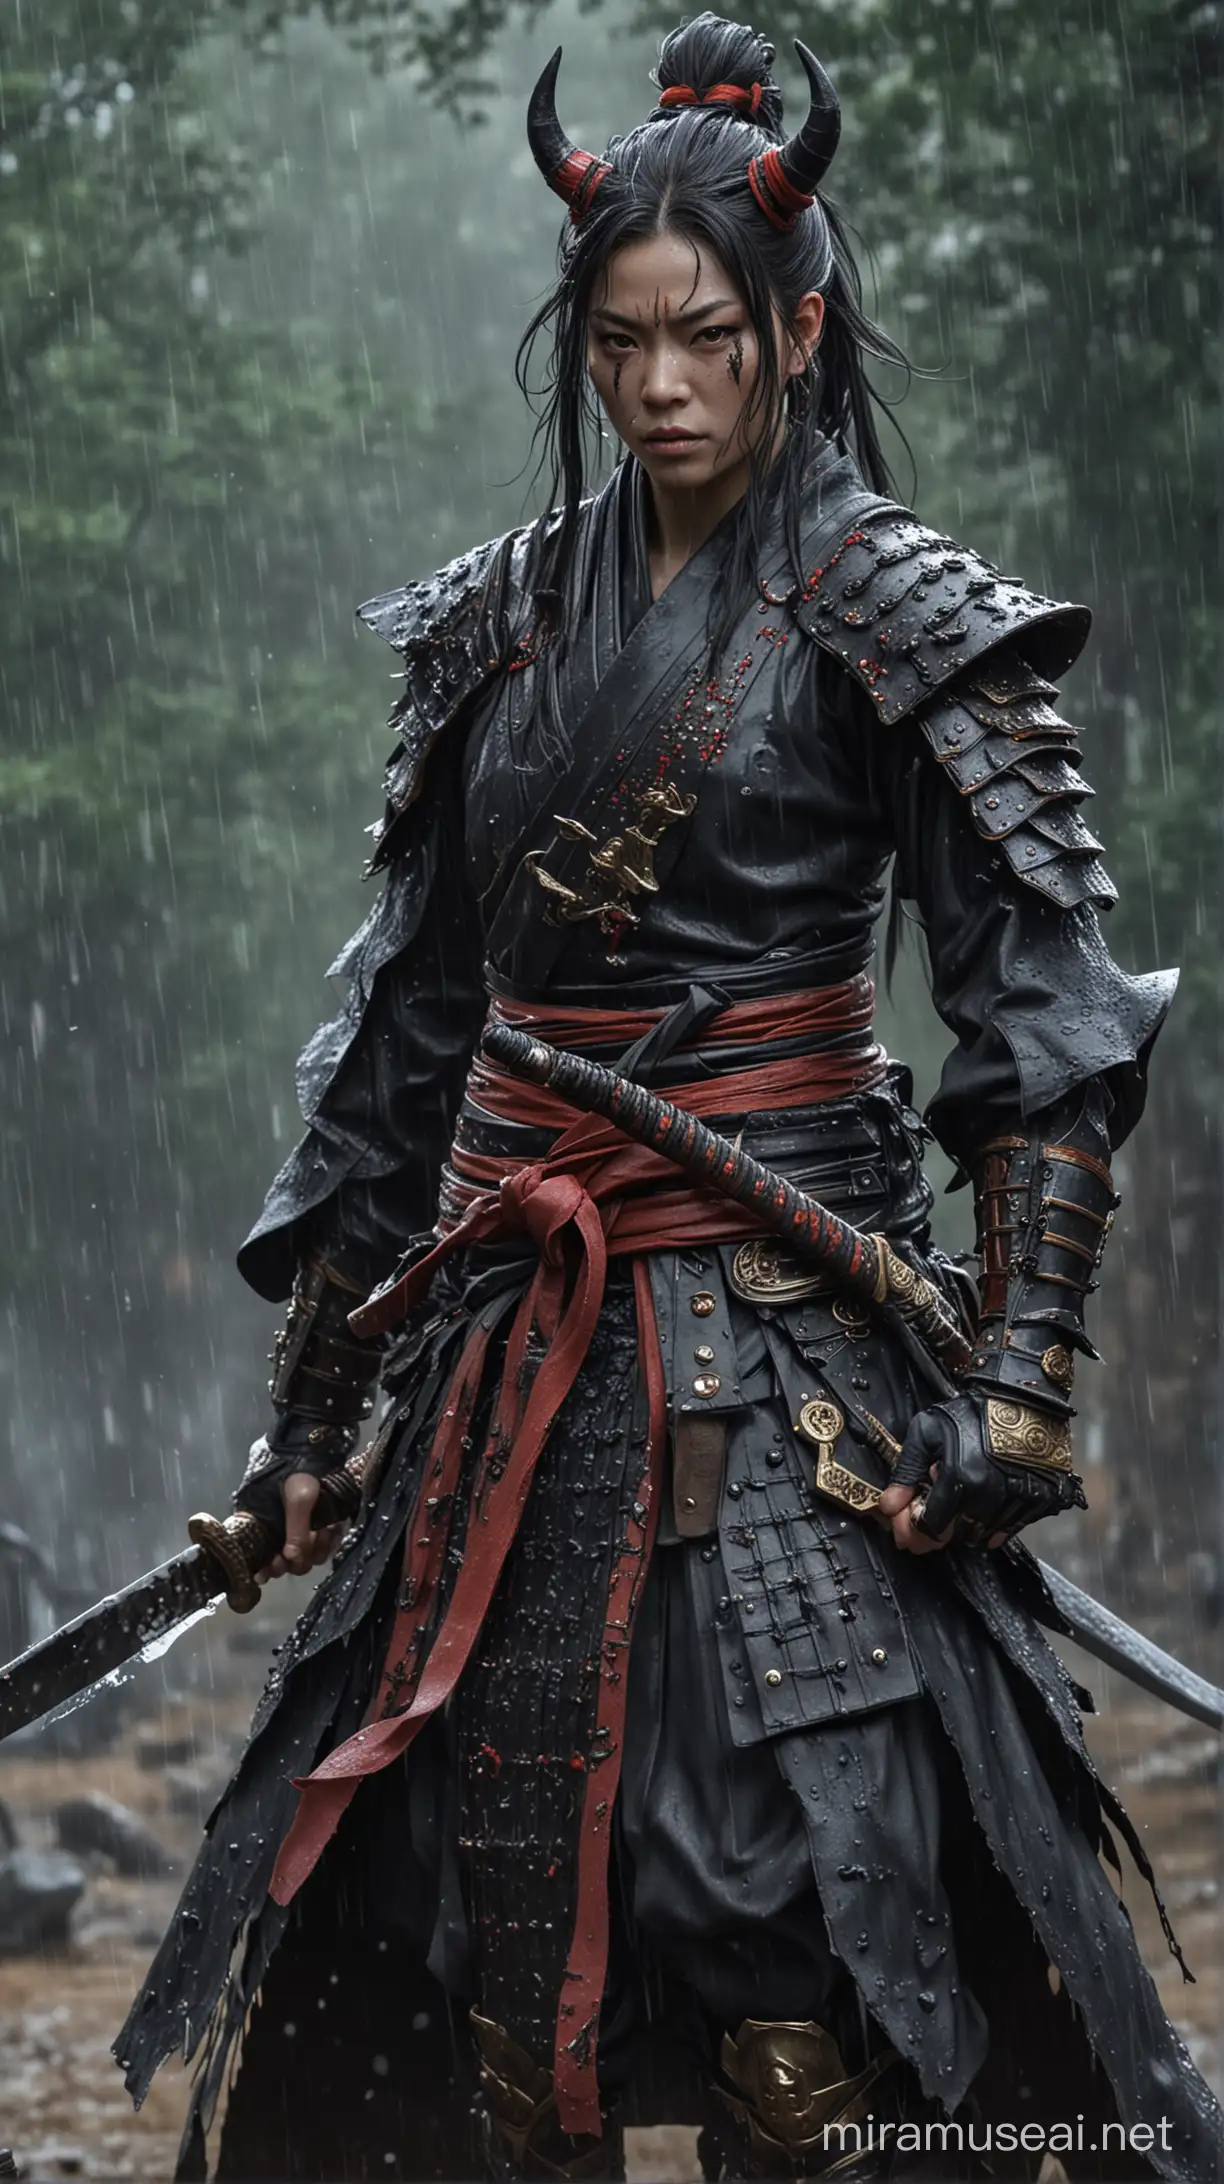 Samurai Showdown Oni Confrontation in Rainy Battlefield